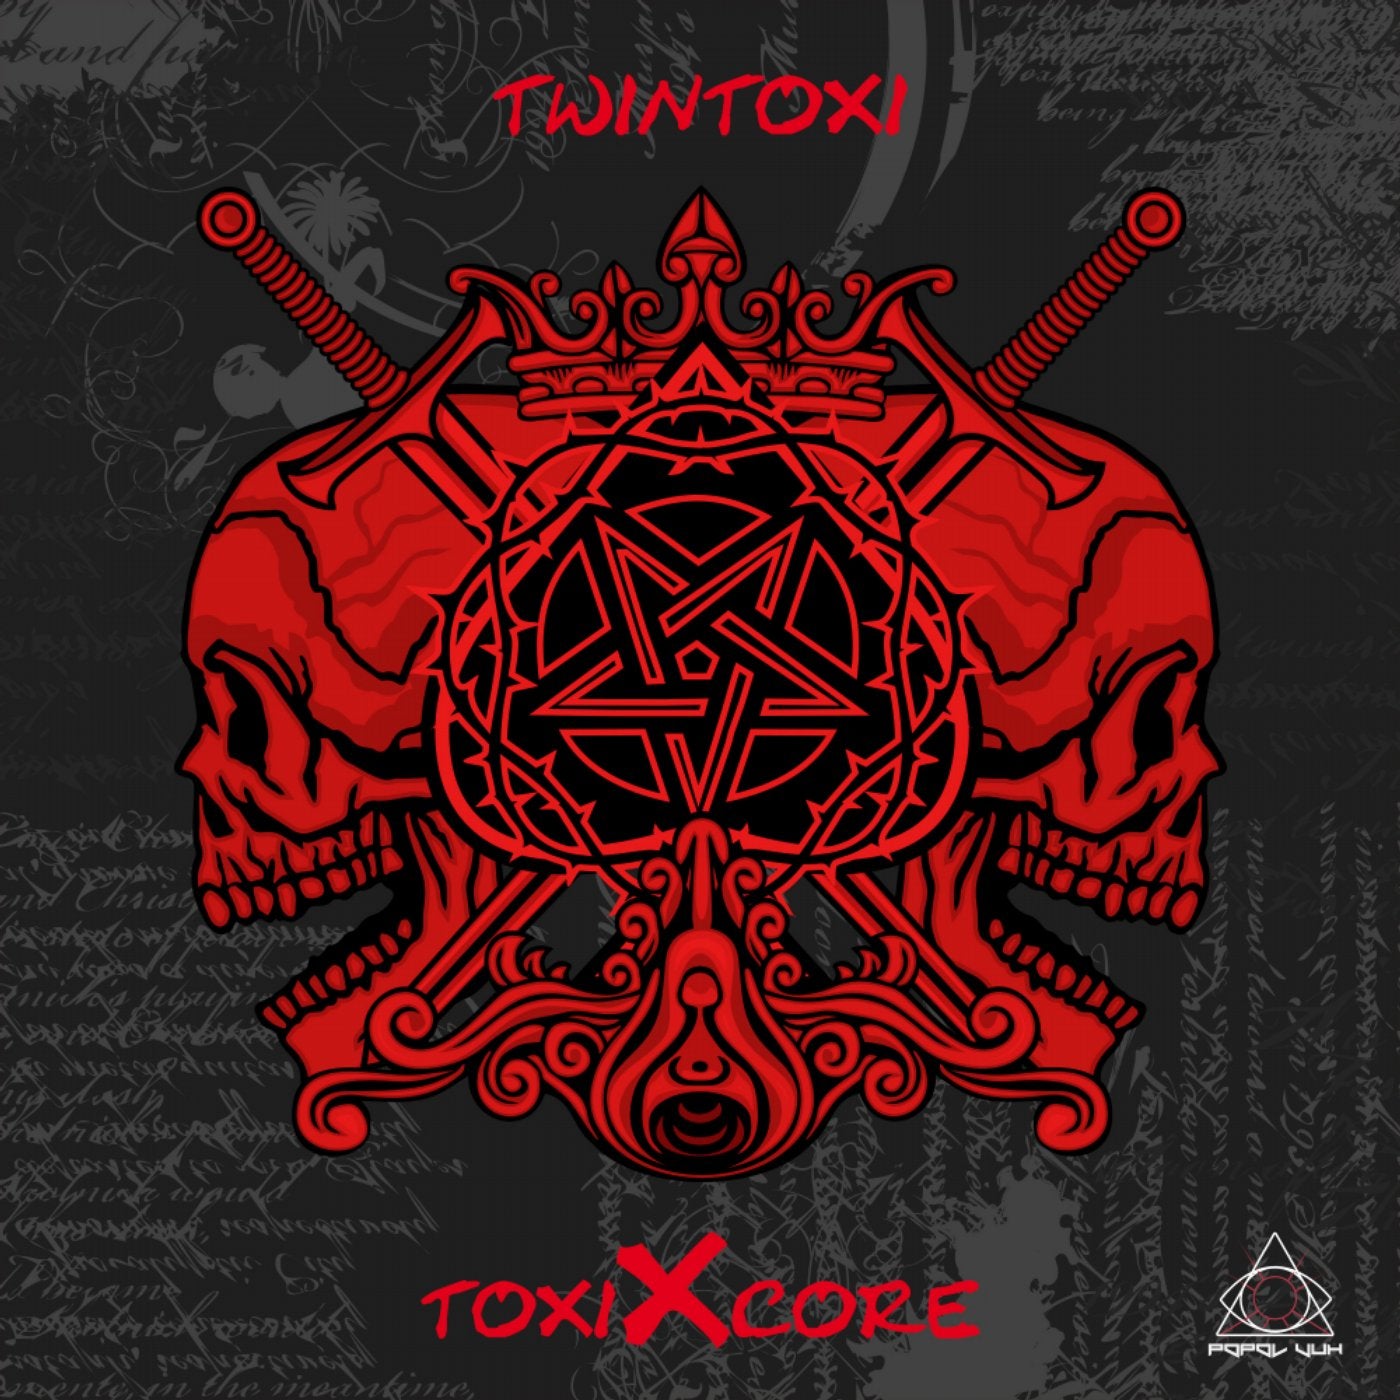 ToxiXcore